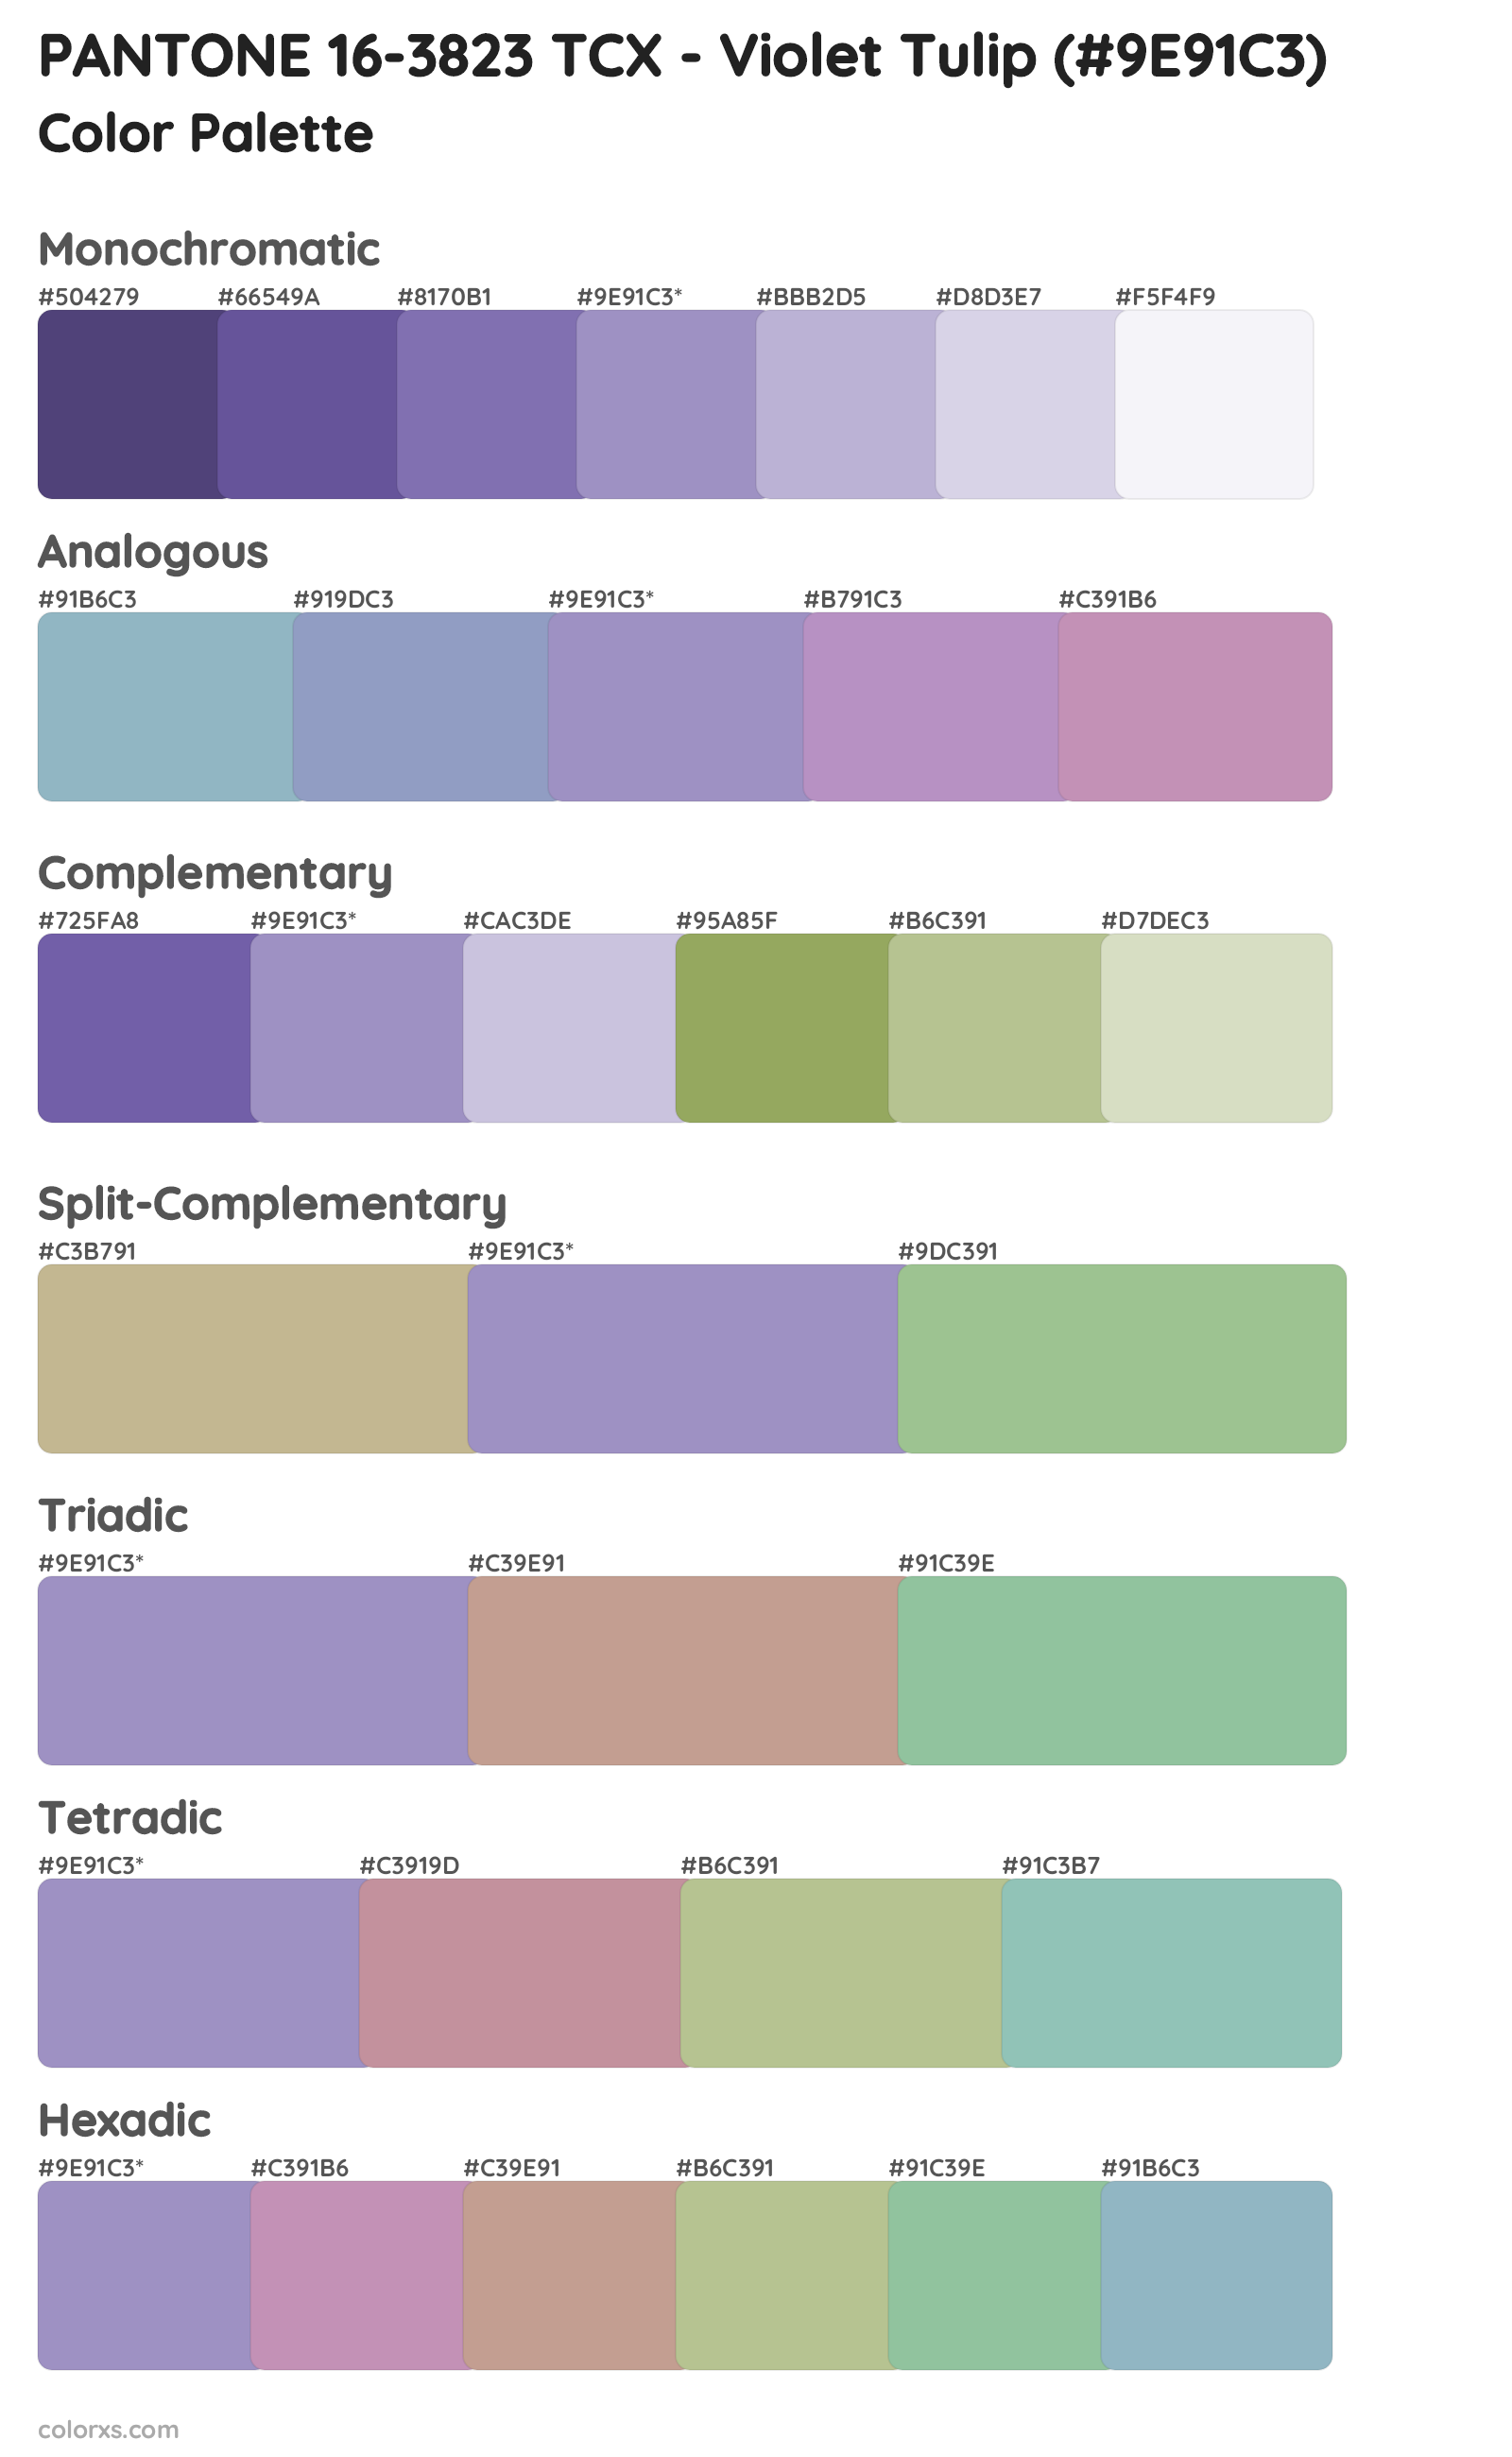 PANTONE 16-3823 TCX - Violet Tulip Color Scheme Palettes